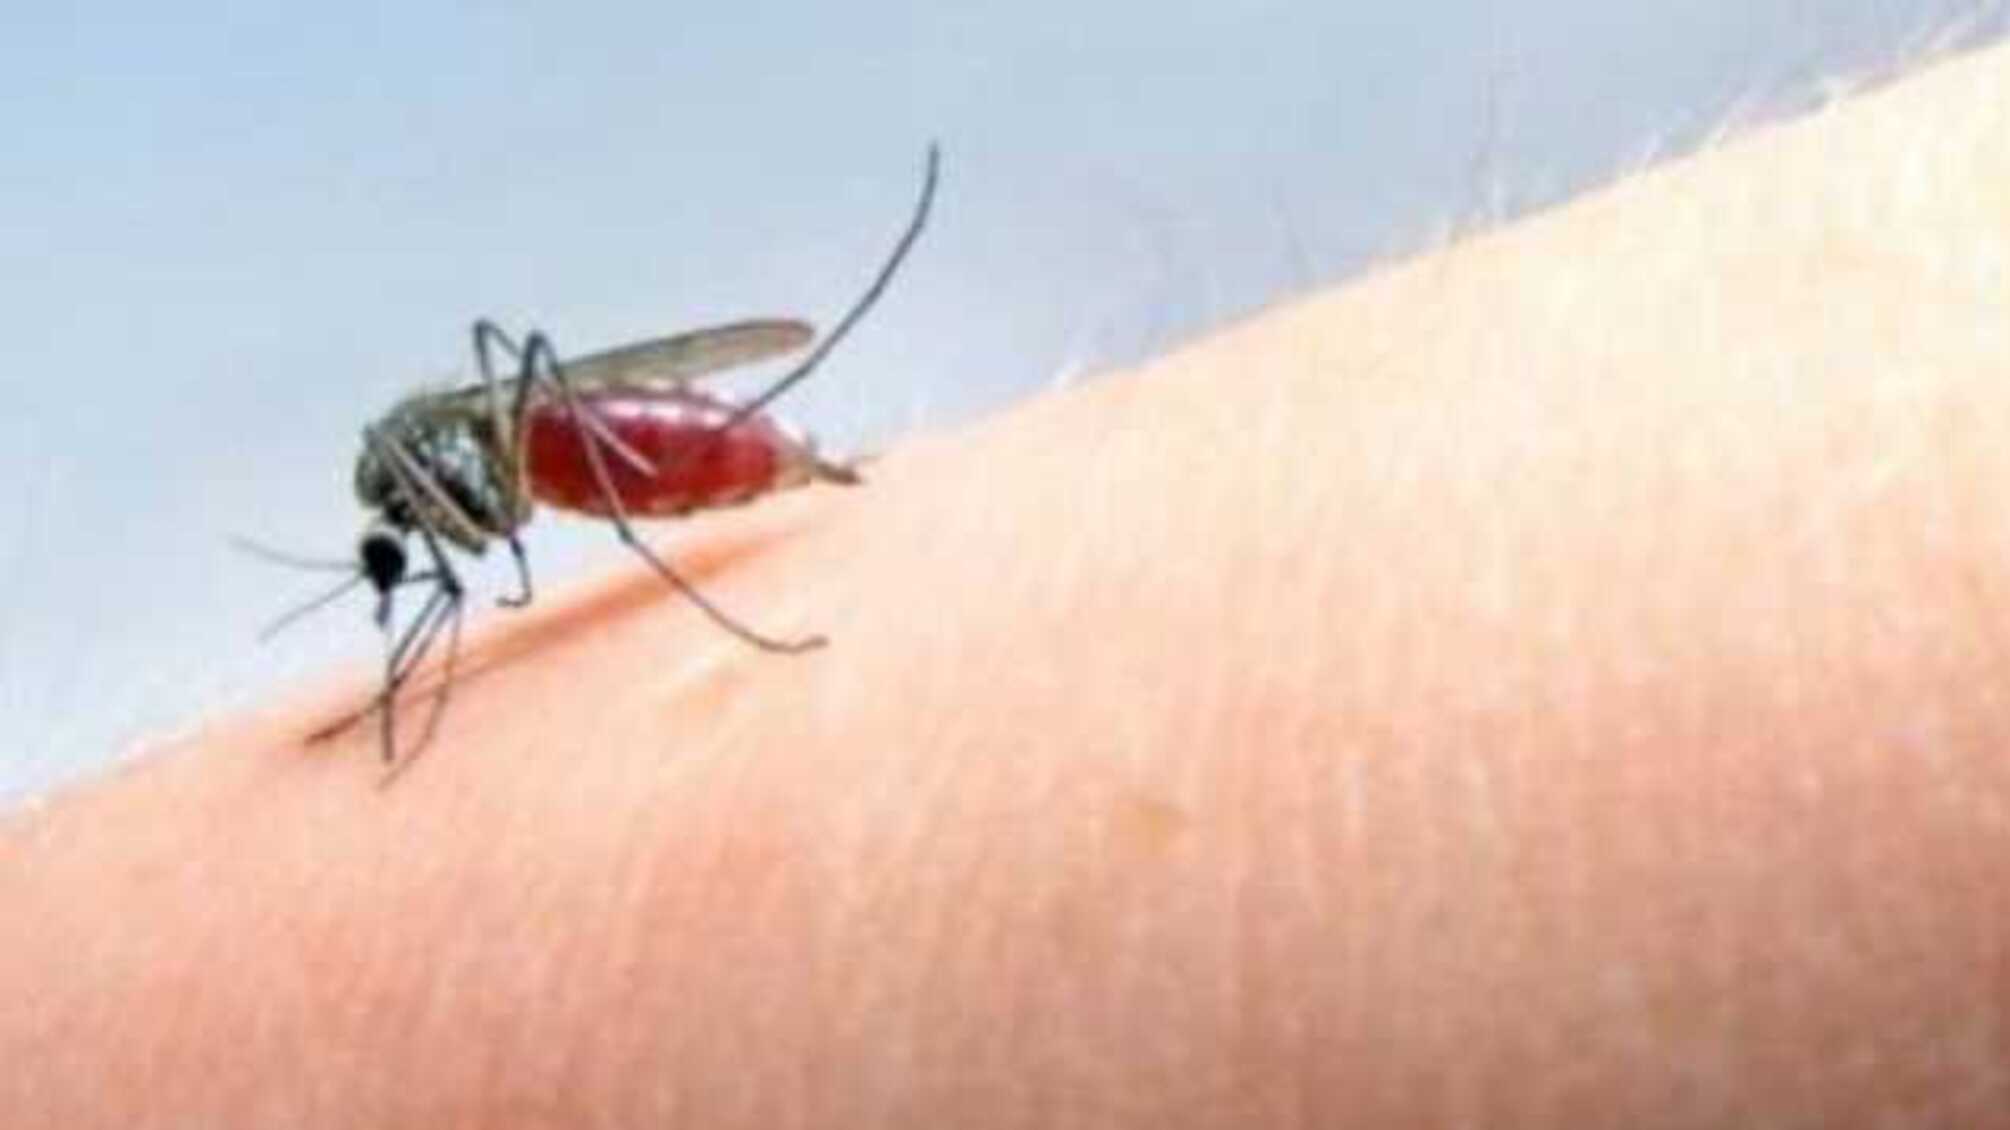 Аллергия от укуса комара